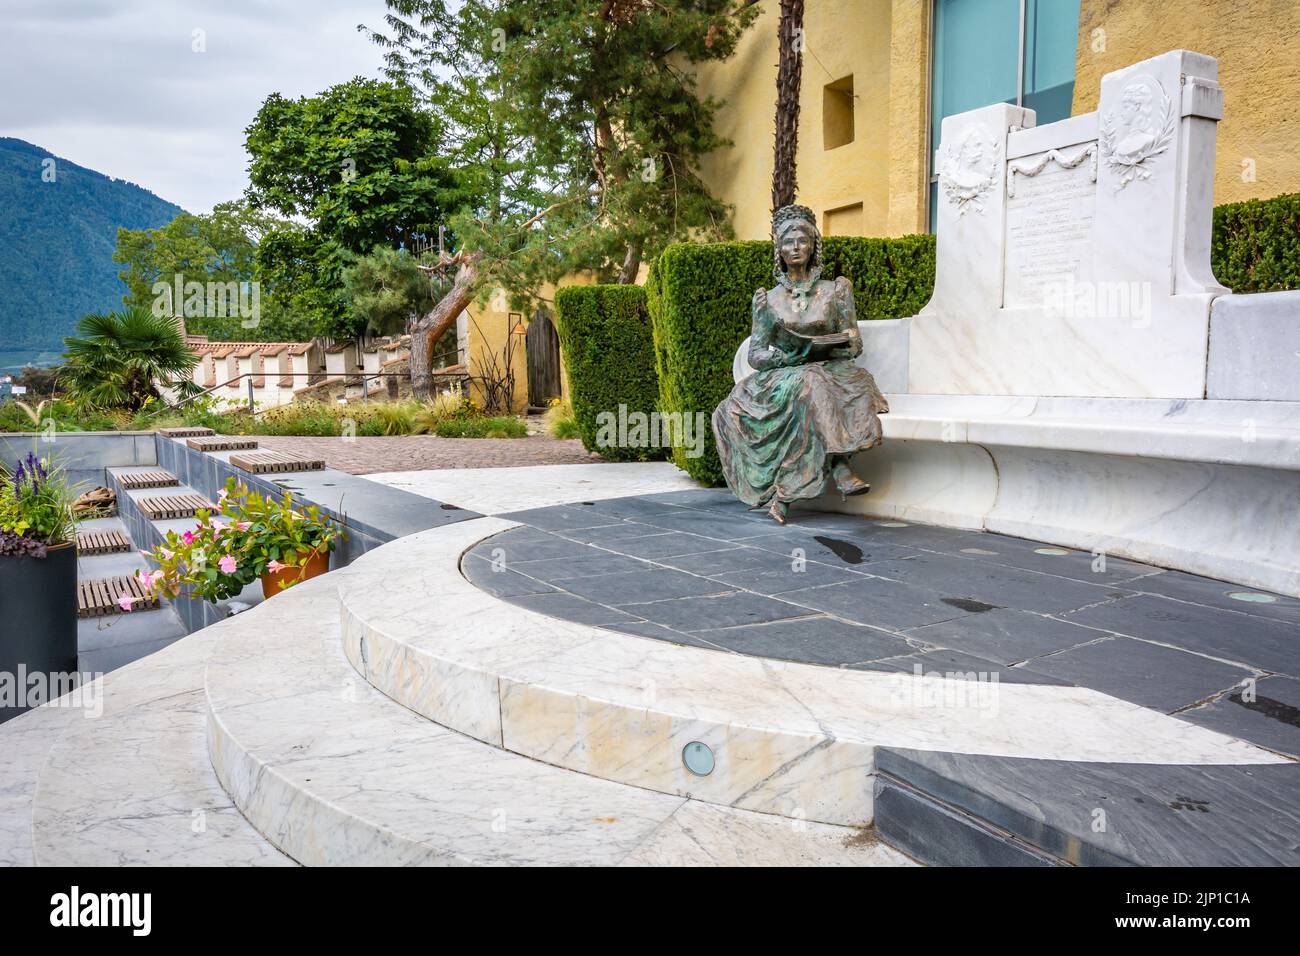 Statua bronzea dell'imperatrice Sissi nel giardino di Castel Trauttmansdorff, Merano, Alto Adige, Italia, Europa Foto Stock